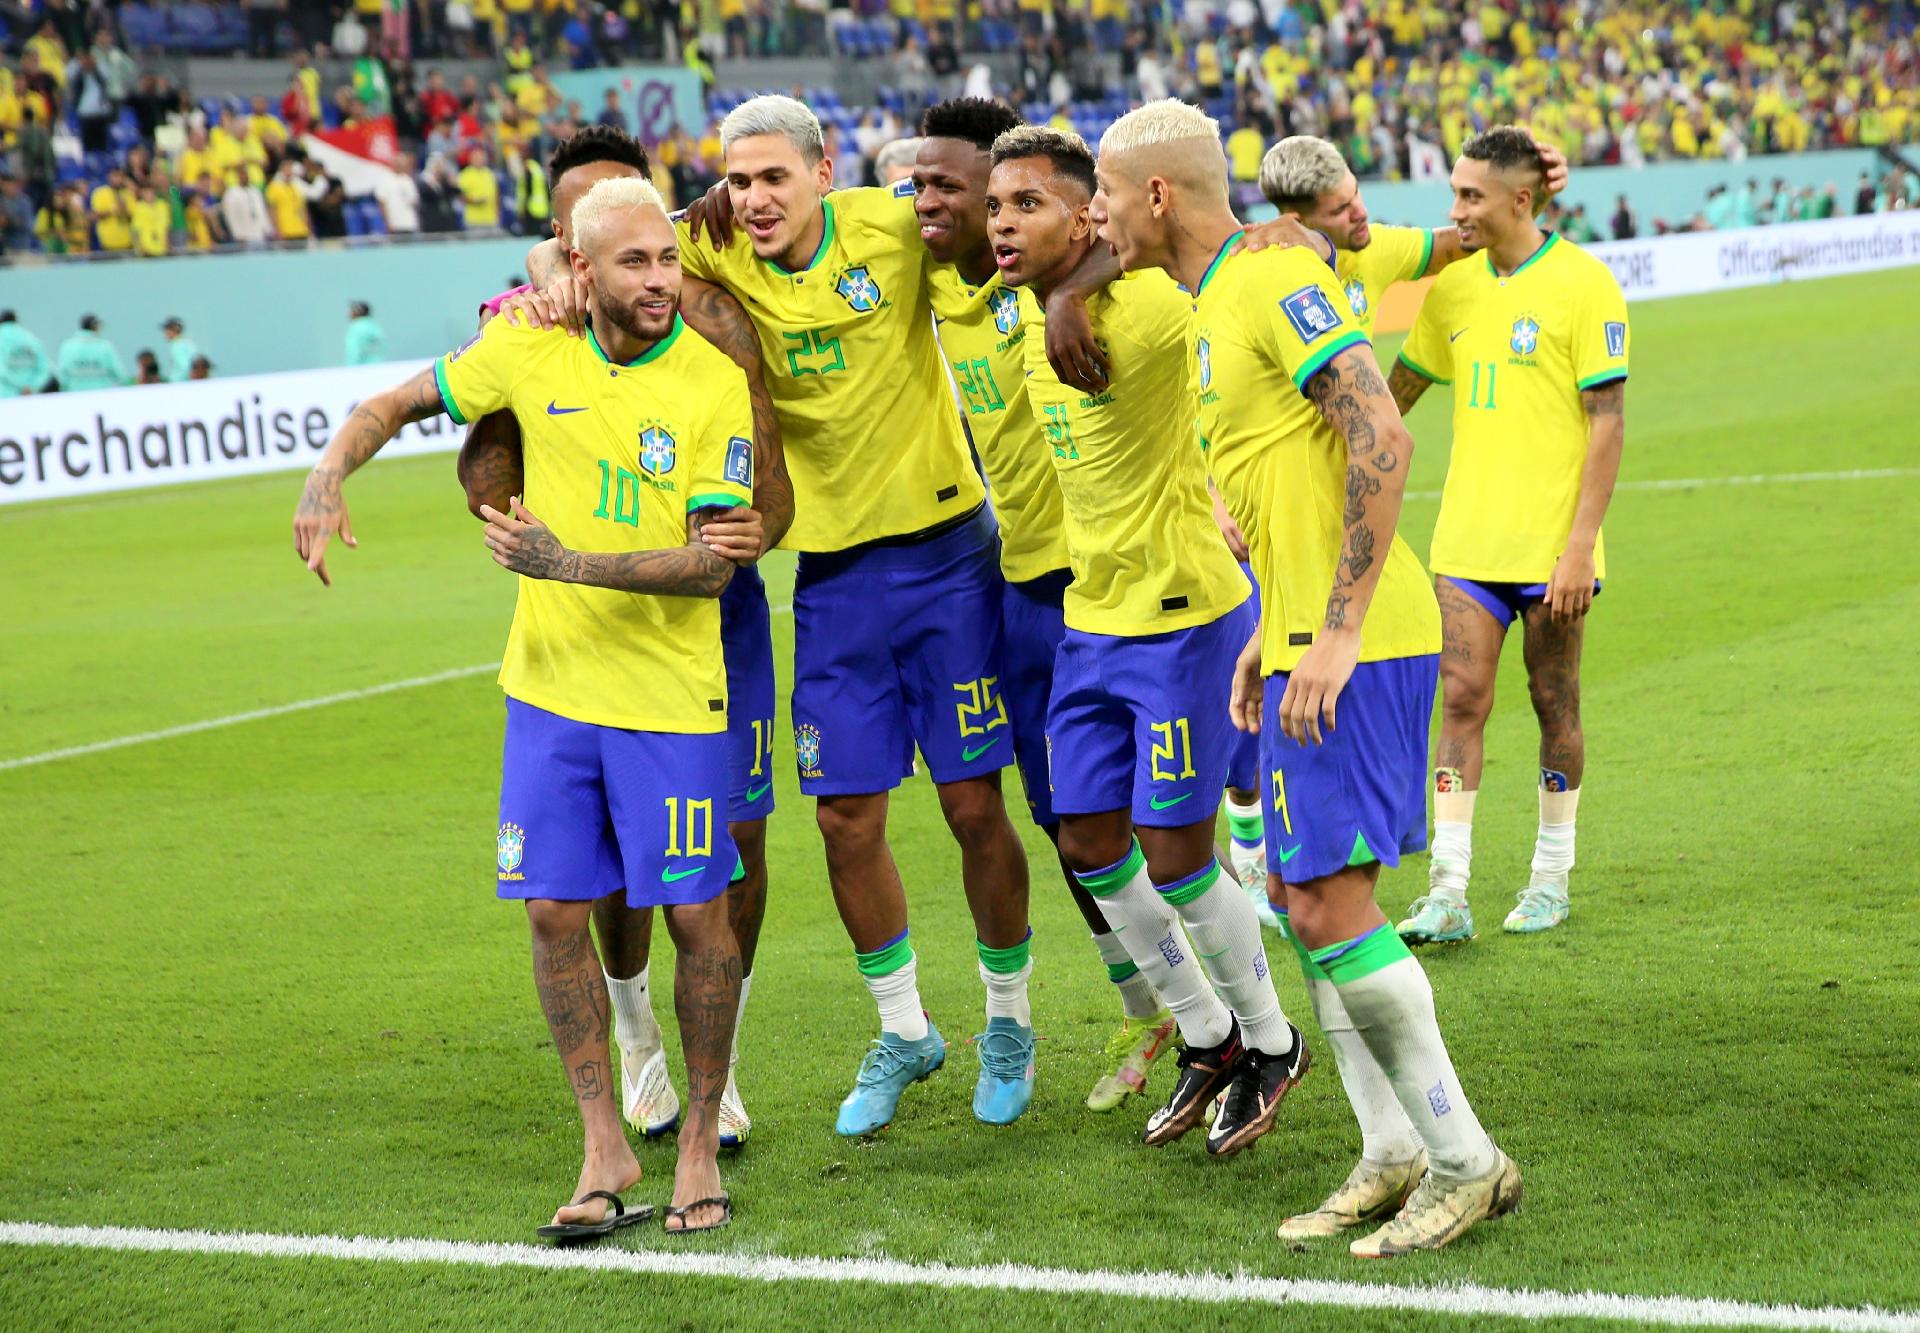 Imprensa francesa celebra retorno do jogo bonito do Brasil após 4 a 1  contra Coreia do Sul